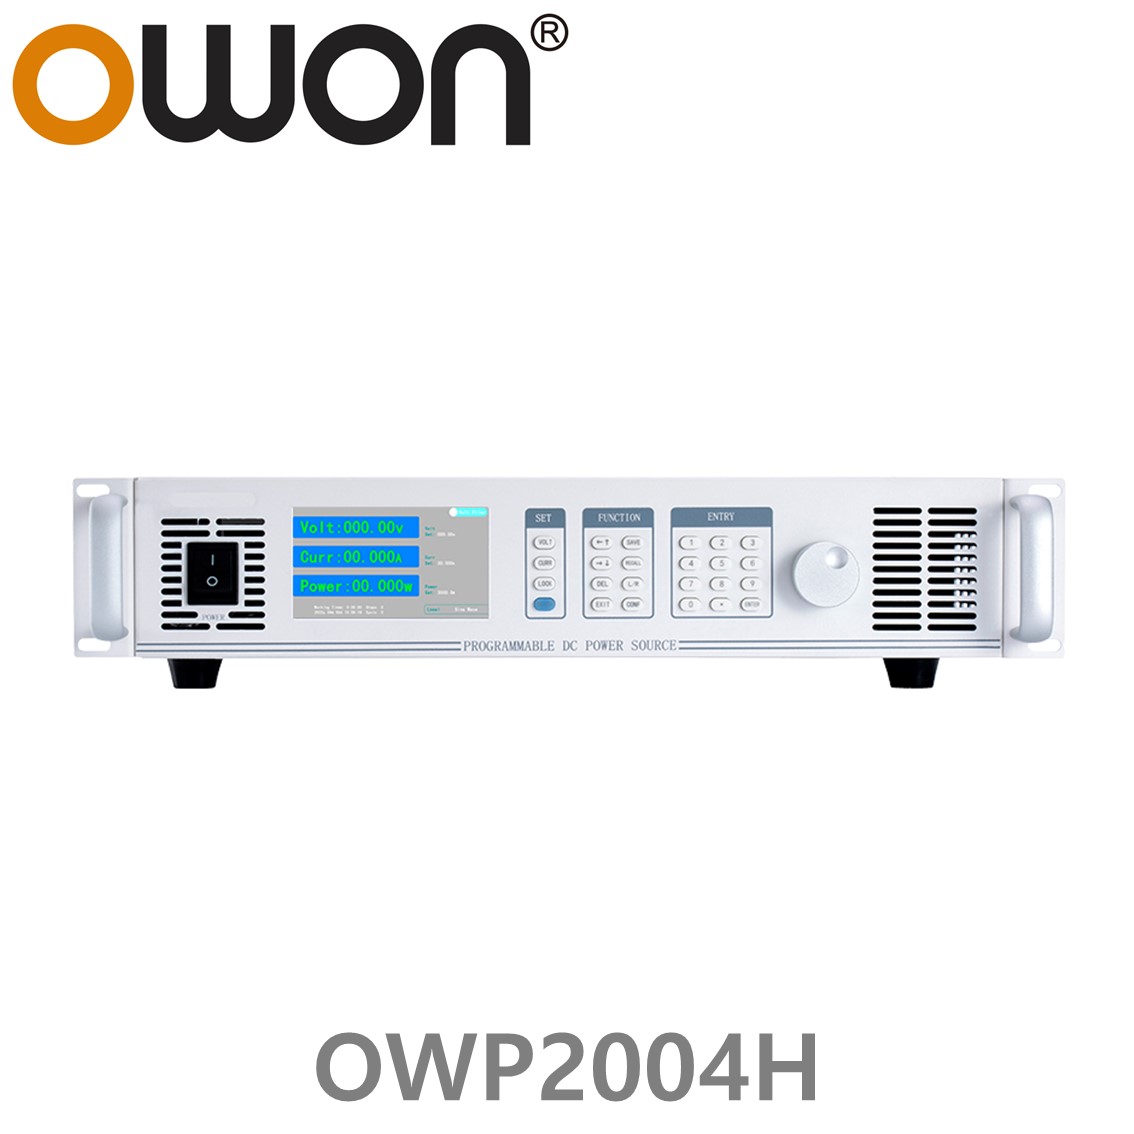 [ OWON ] OWP2004H 고전력 DC파워서플라이, 0-45.000V  /0-100.00A / 2000.0W DC전원공급장치